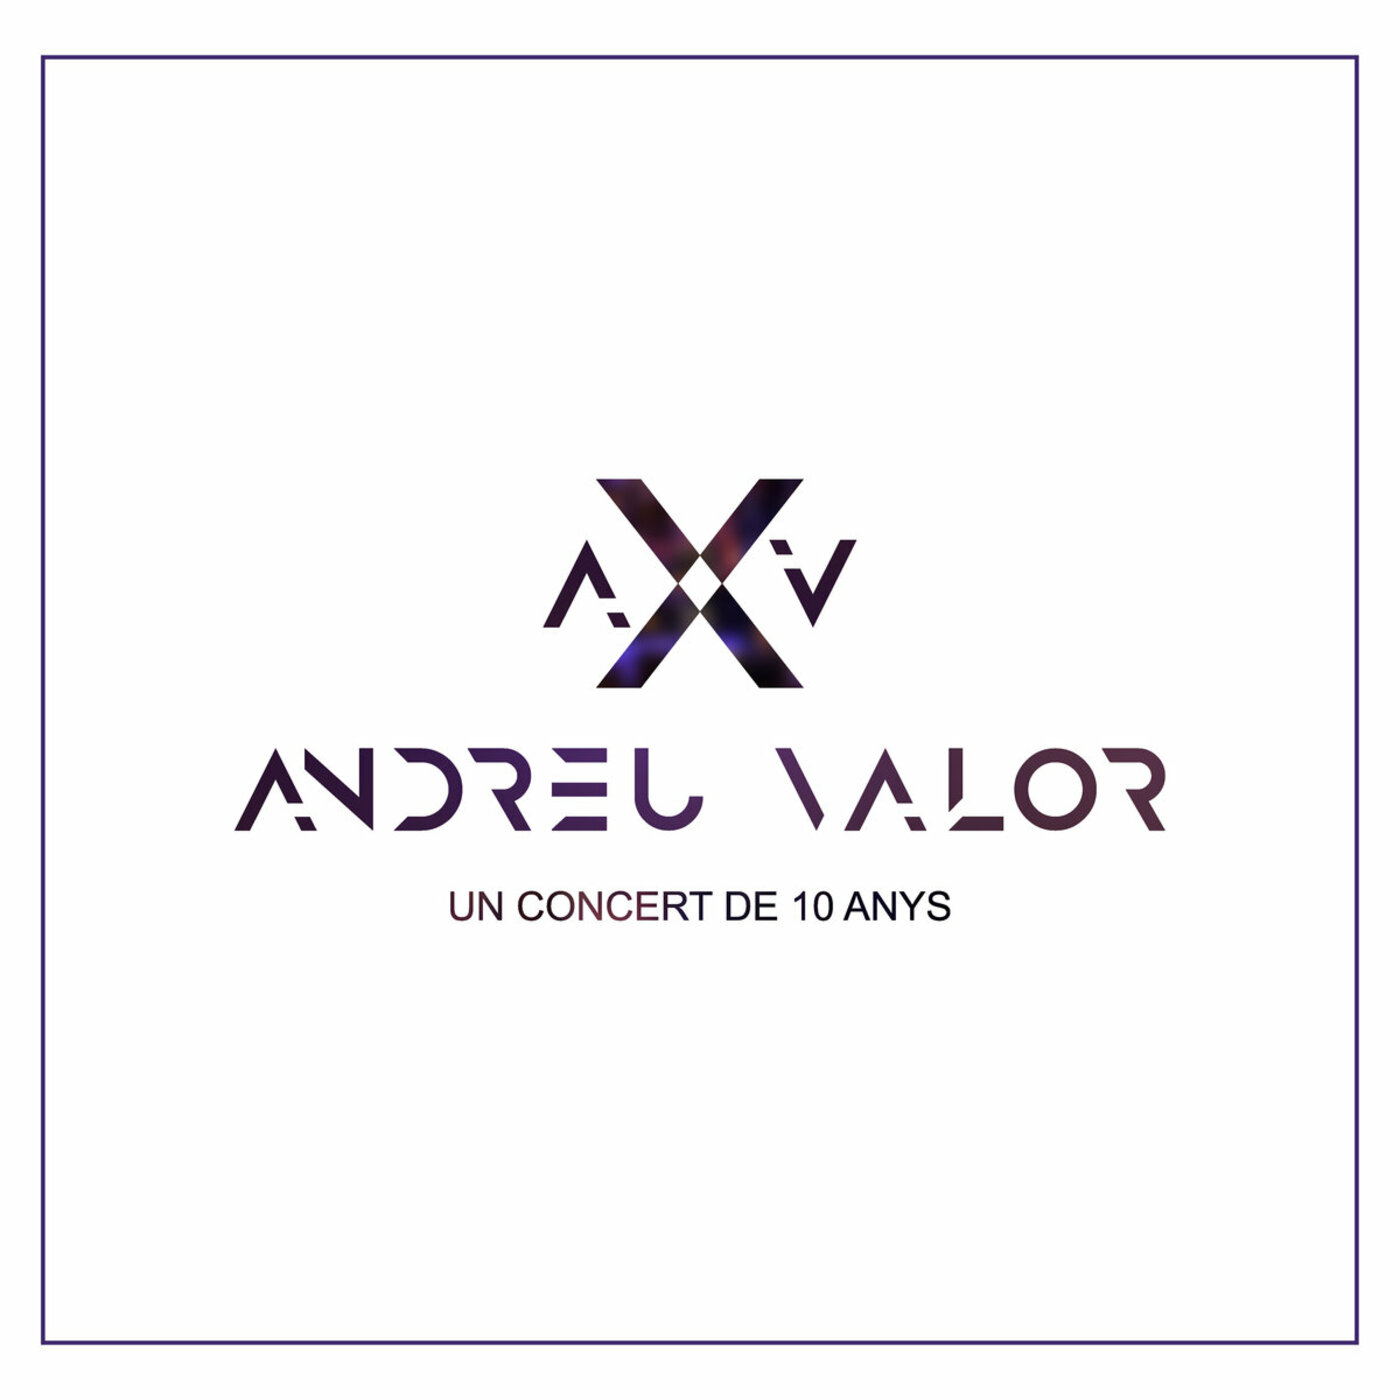 Andreu Valor - Un concert de 10 anys | musica en valencià